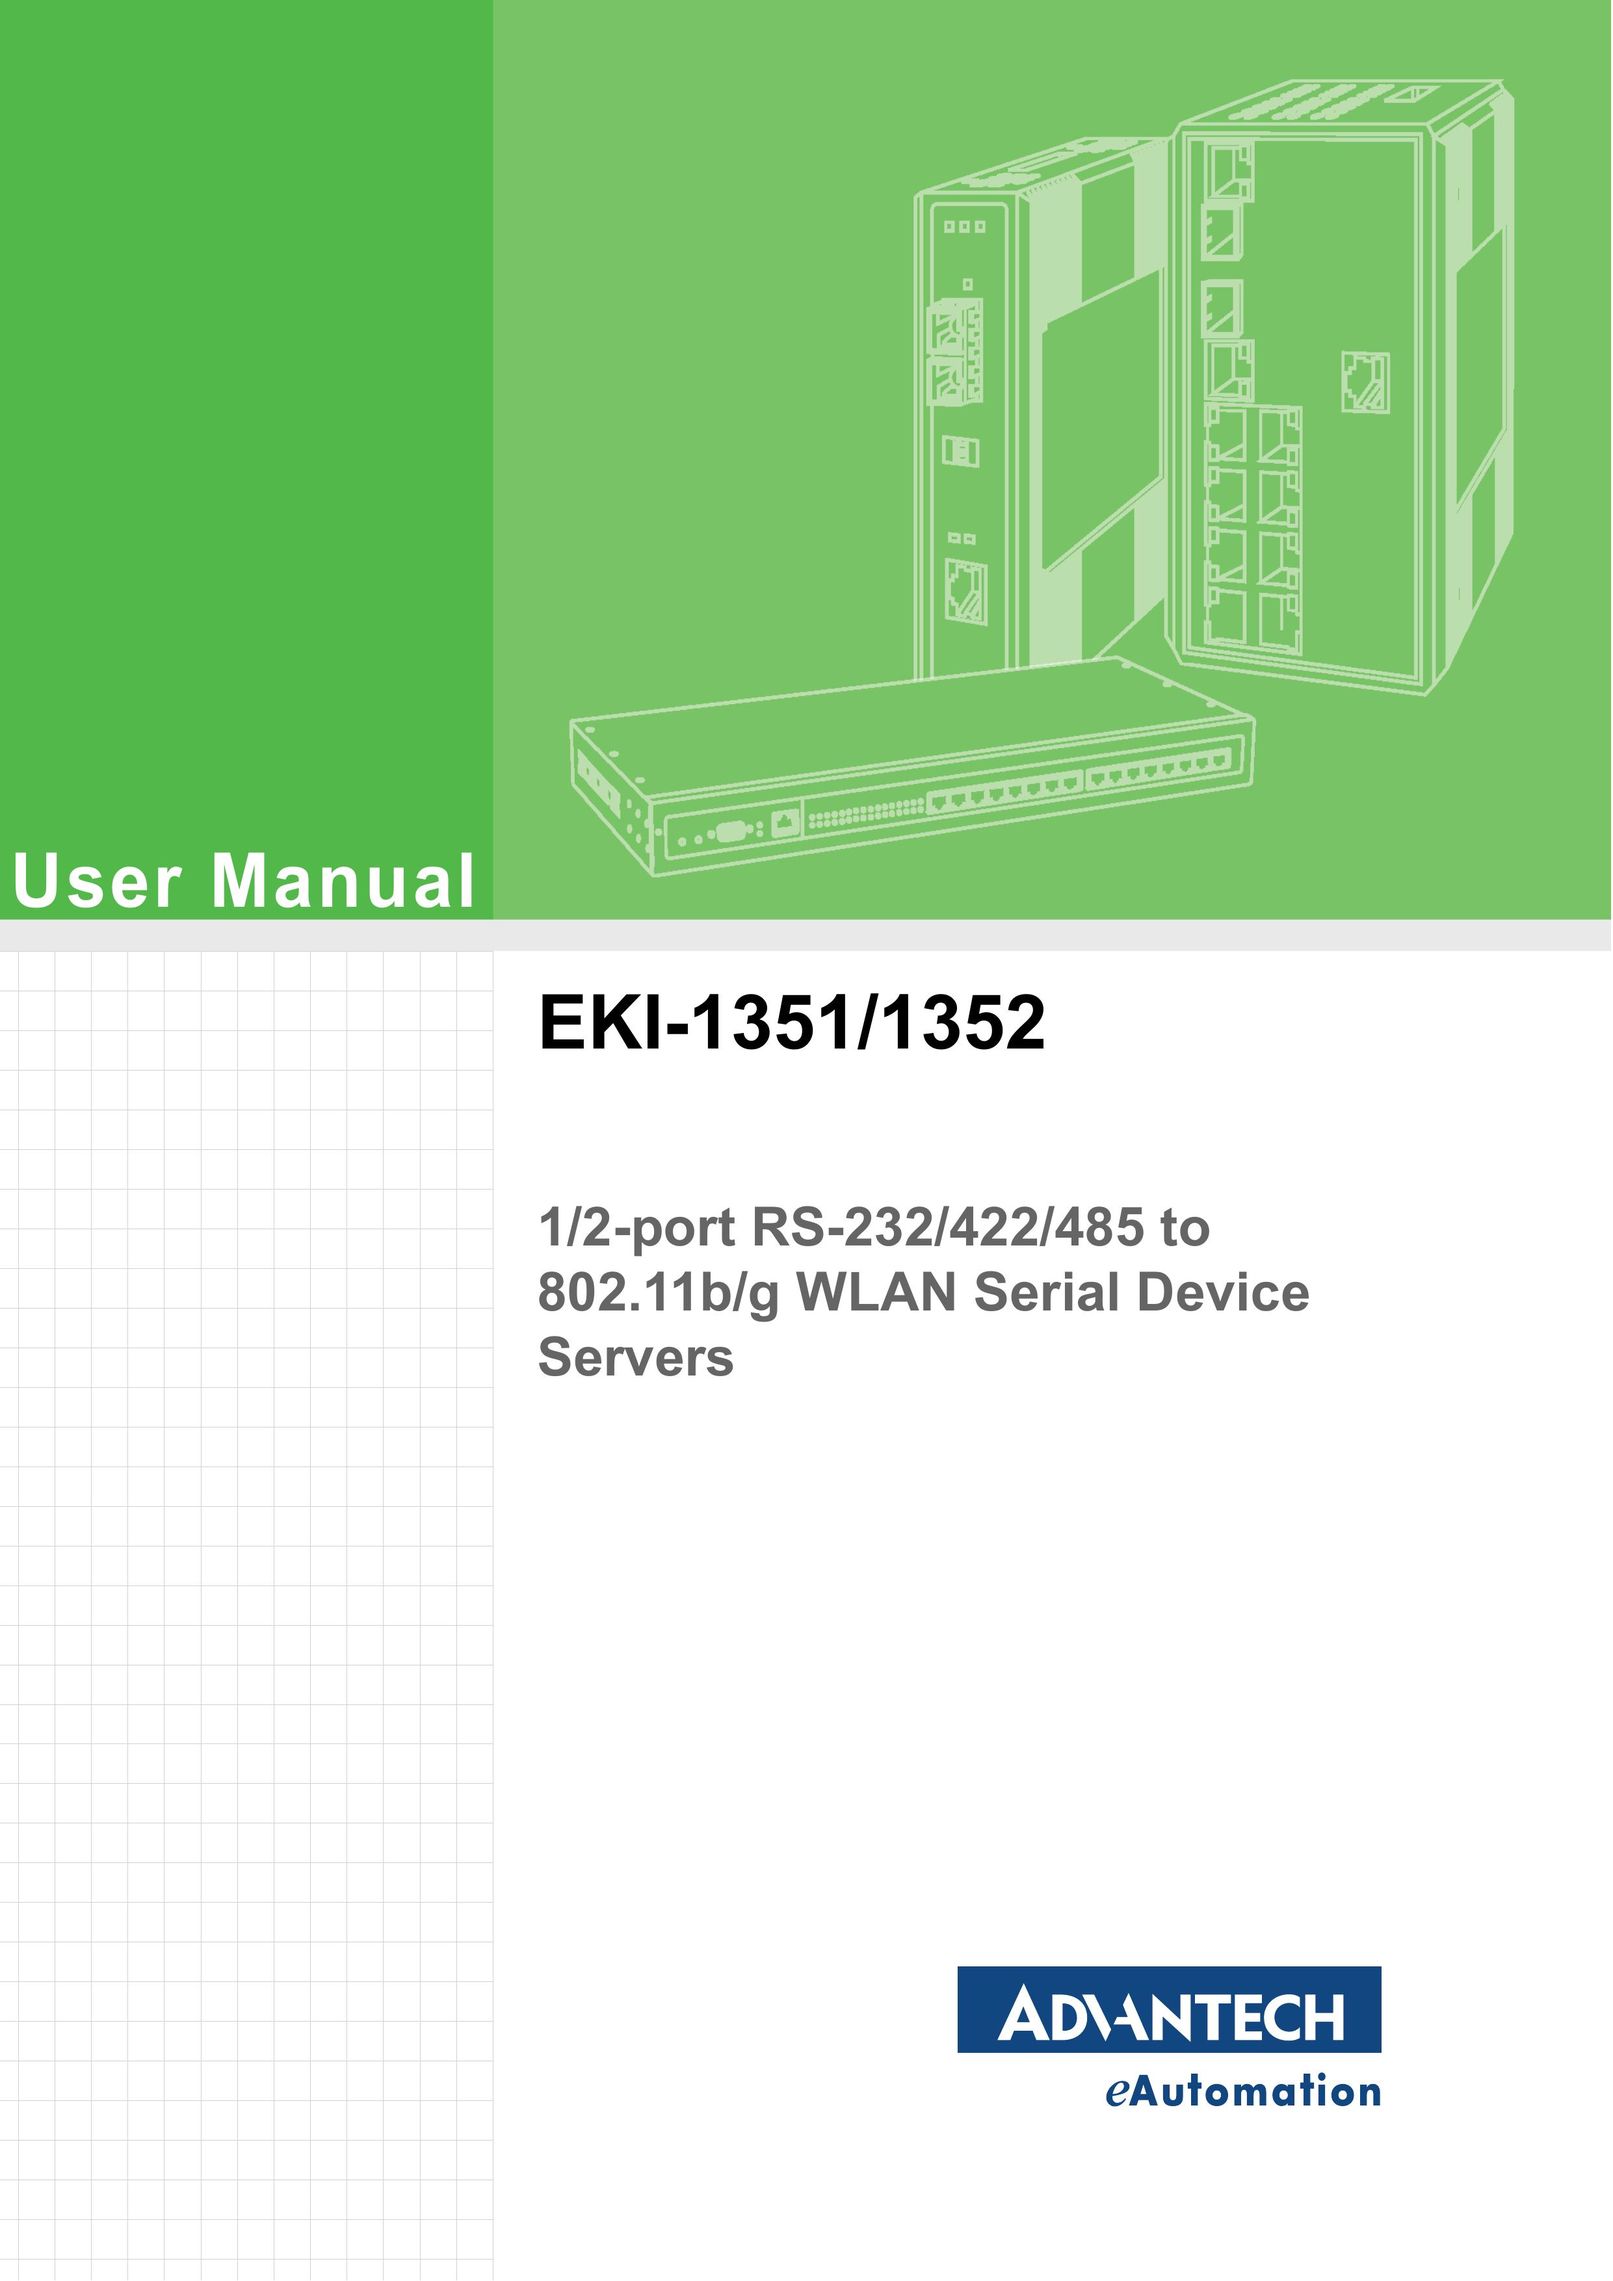 Advantech EKI-1352 Server User Manual